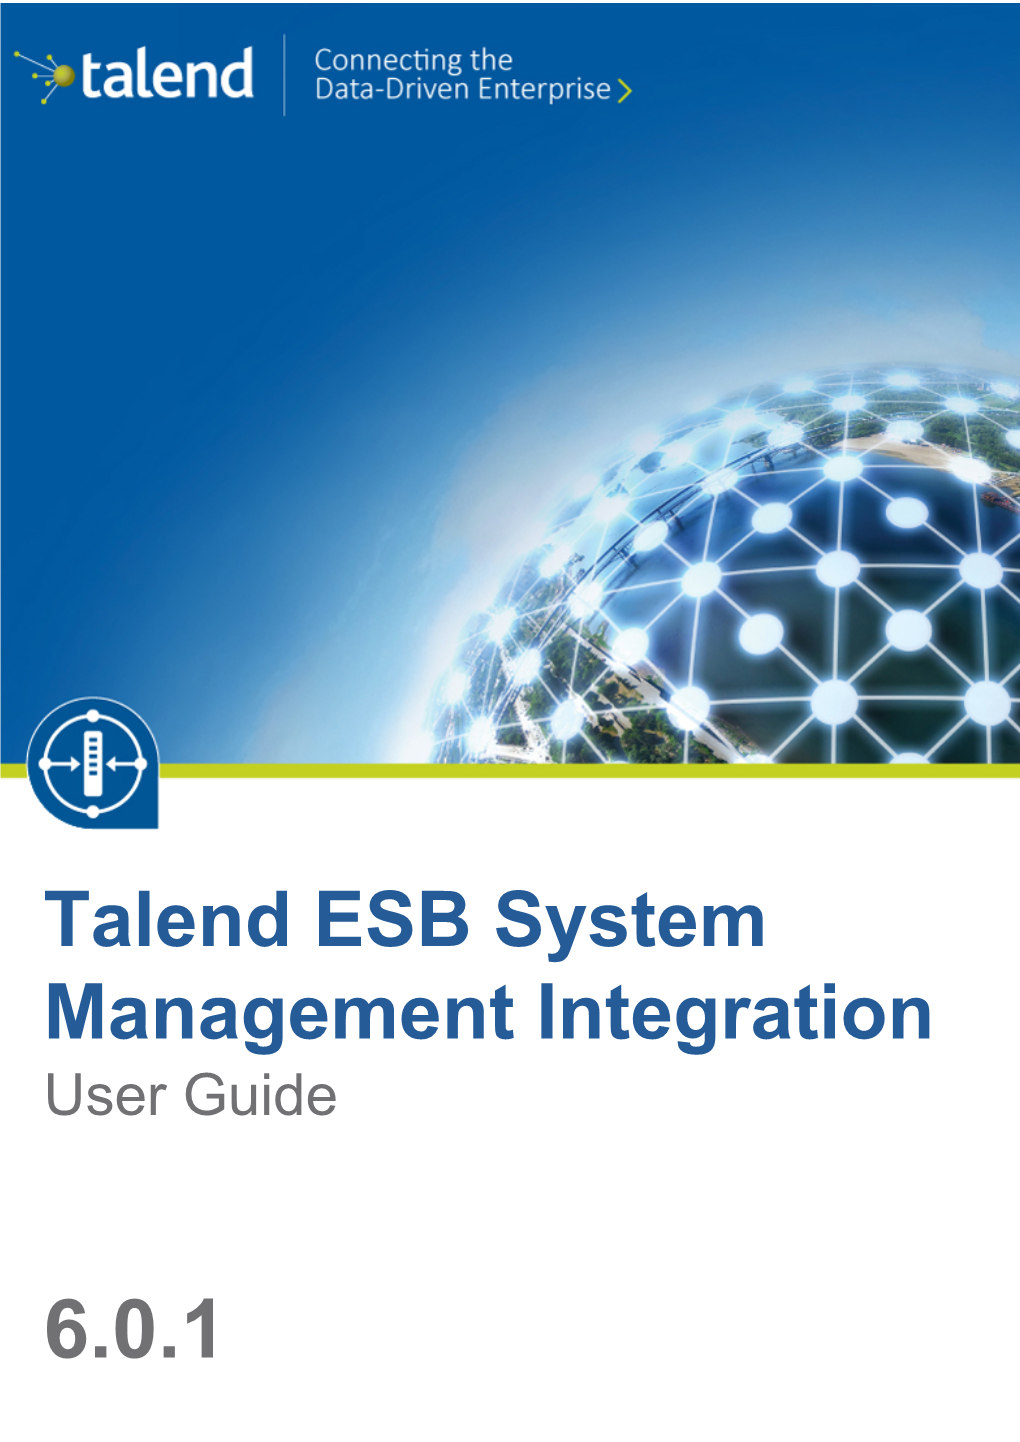 Talend ESB System Management Integration User Guide